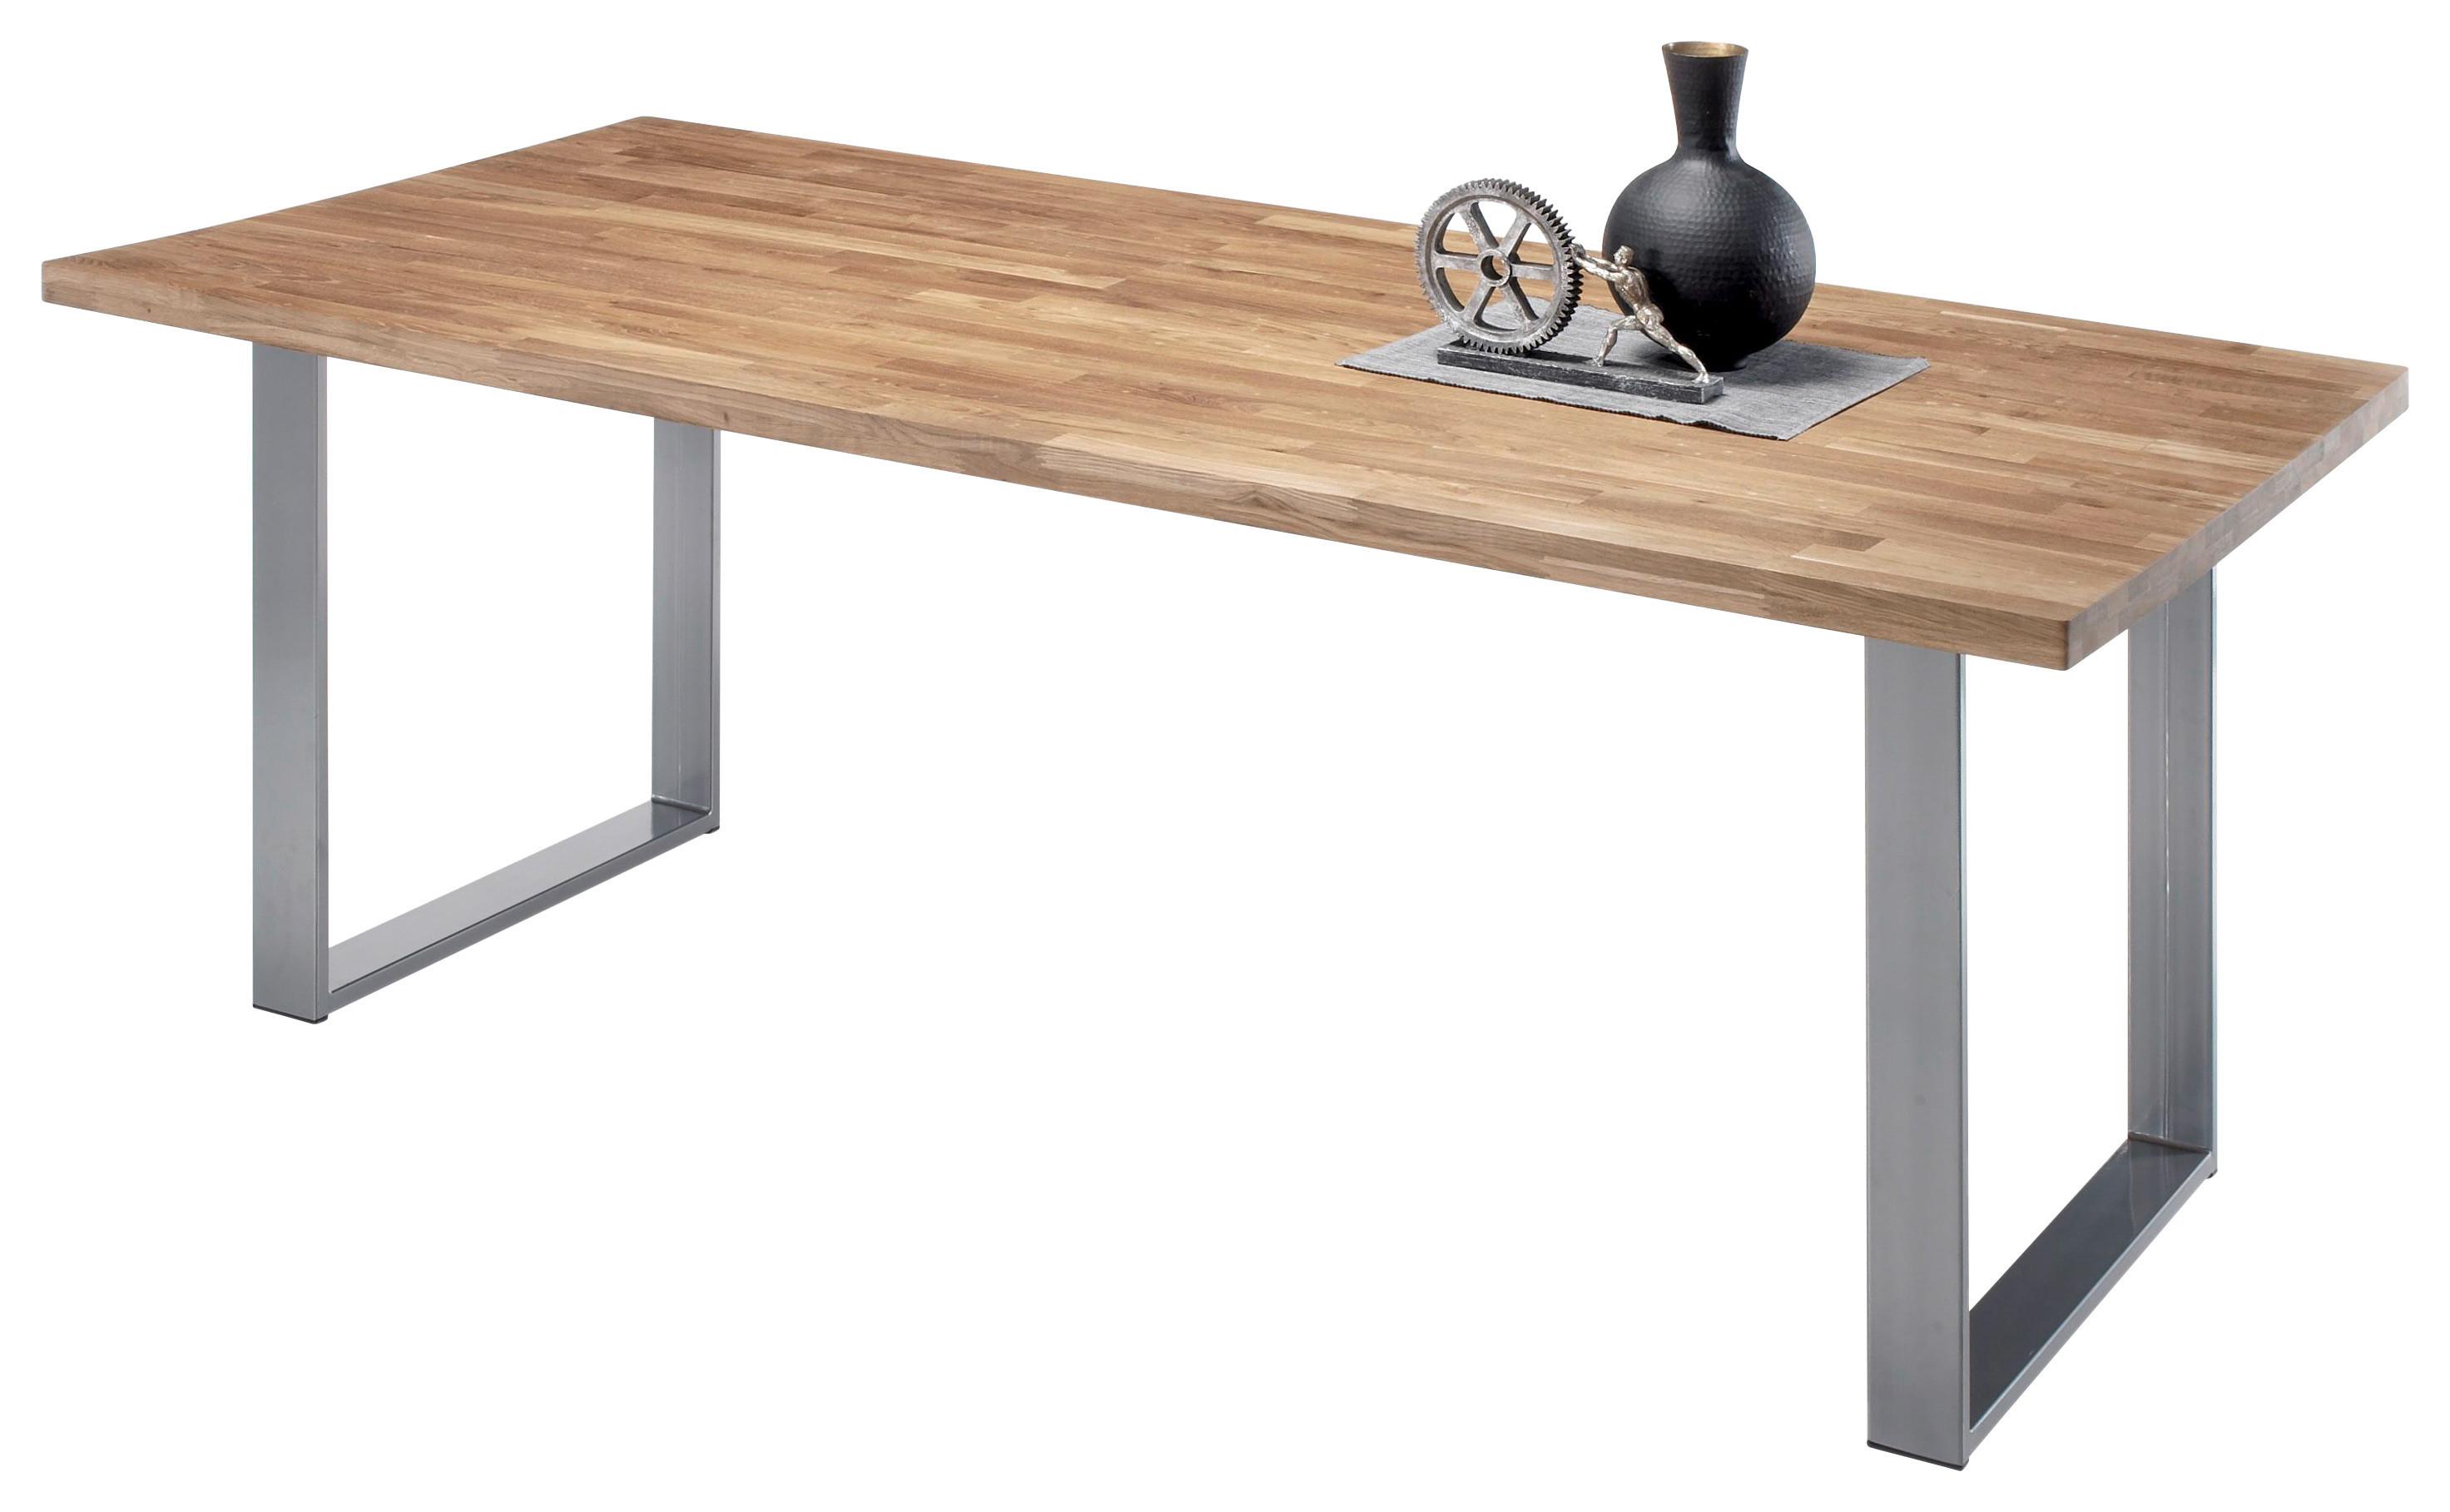 Jídelní Stůl Samuel Dub Masiv 200x100 Cm - barvy dubu/barvy hliníku, Moderní, kov/dřevo (200/100/76cm) - MID.YOU